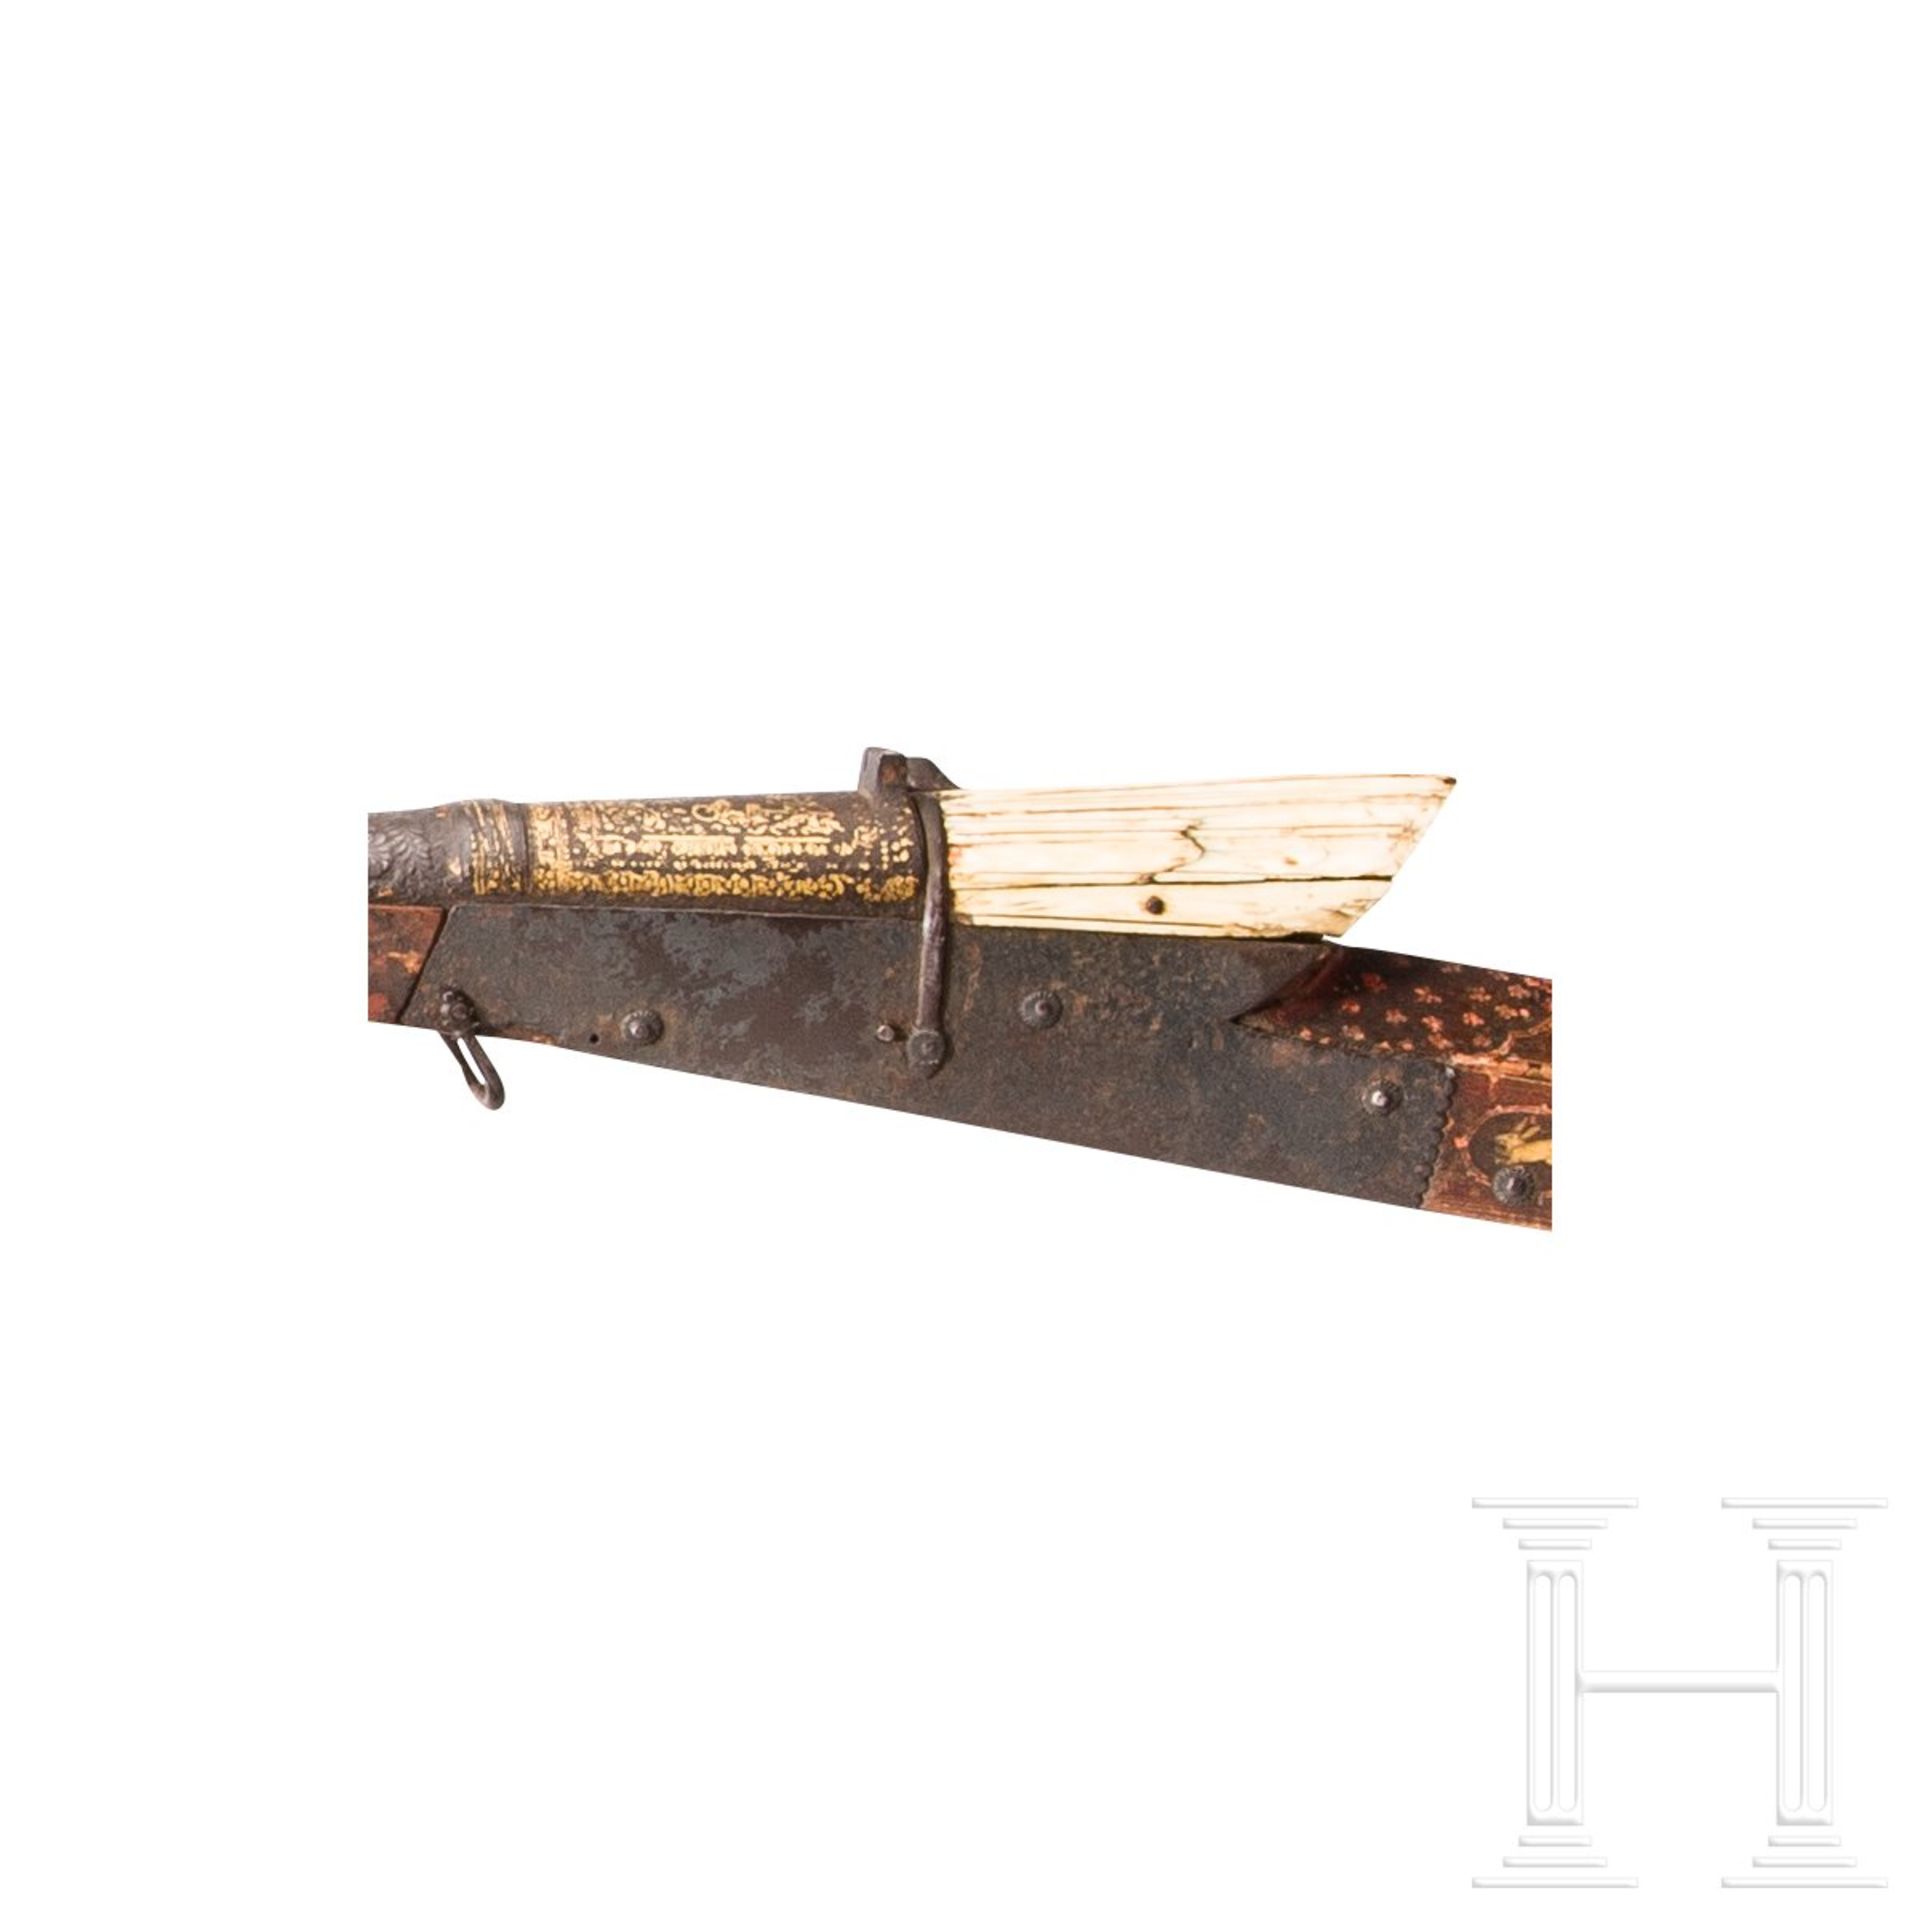 Goldtauschiertes Luntenschlossgewehr mit bemaltem Holzschaft, Indien, um 1800 - Bild 5 aus 5